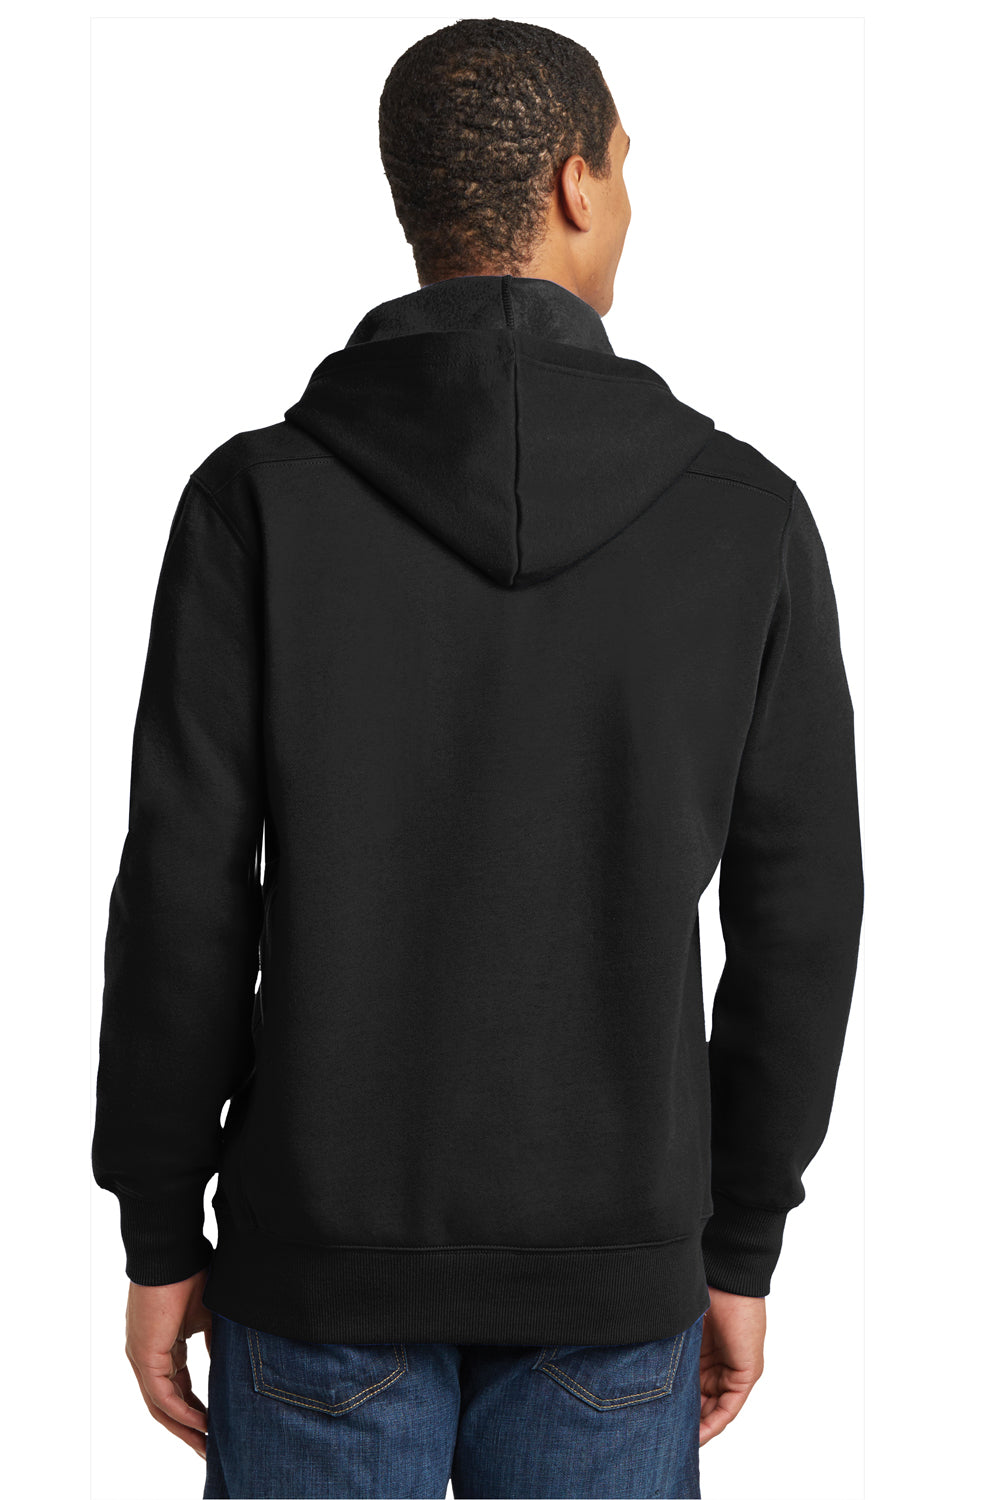 Sport-Tek ST271 Mens Lace Up Fleece Hooded Sweatshirt Hoodie Black Back